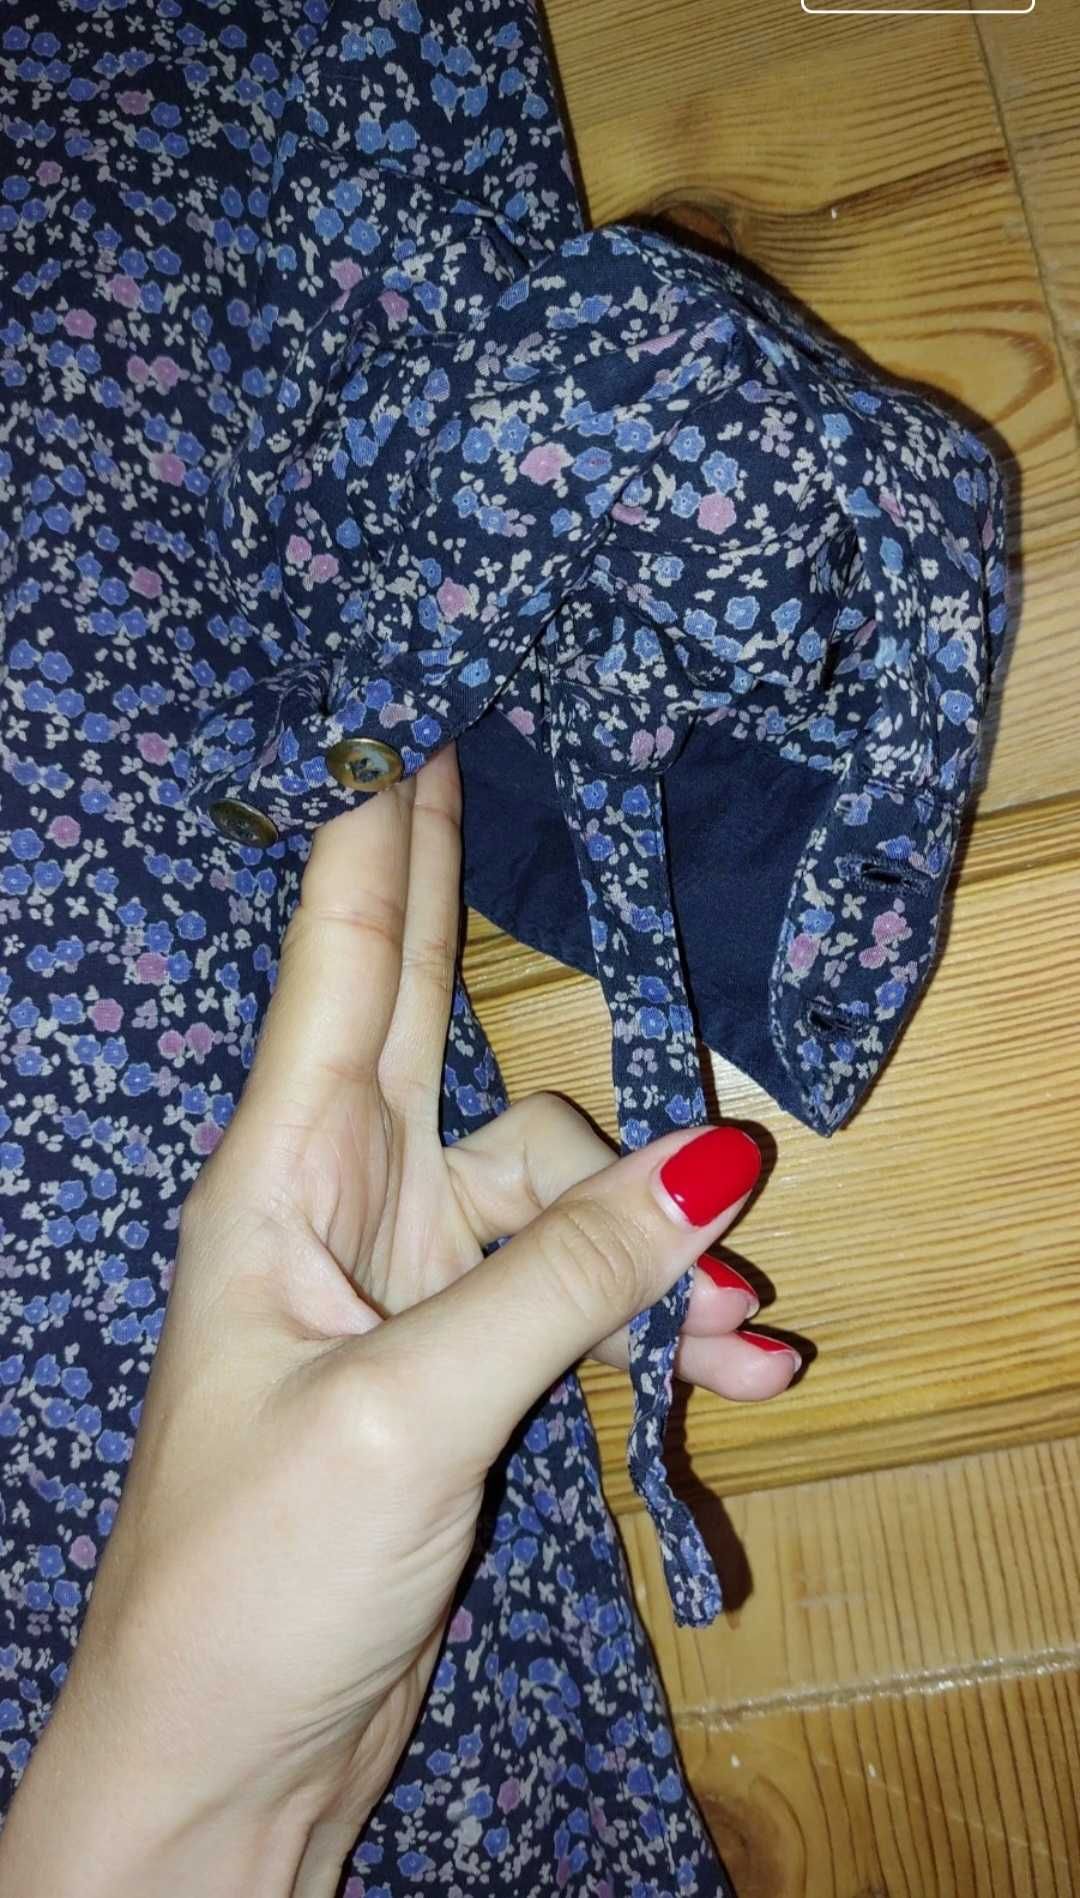 Hause Koszula damska, granatowo-fioletowa w kwiaty, rozmiar M